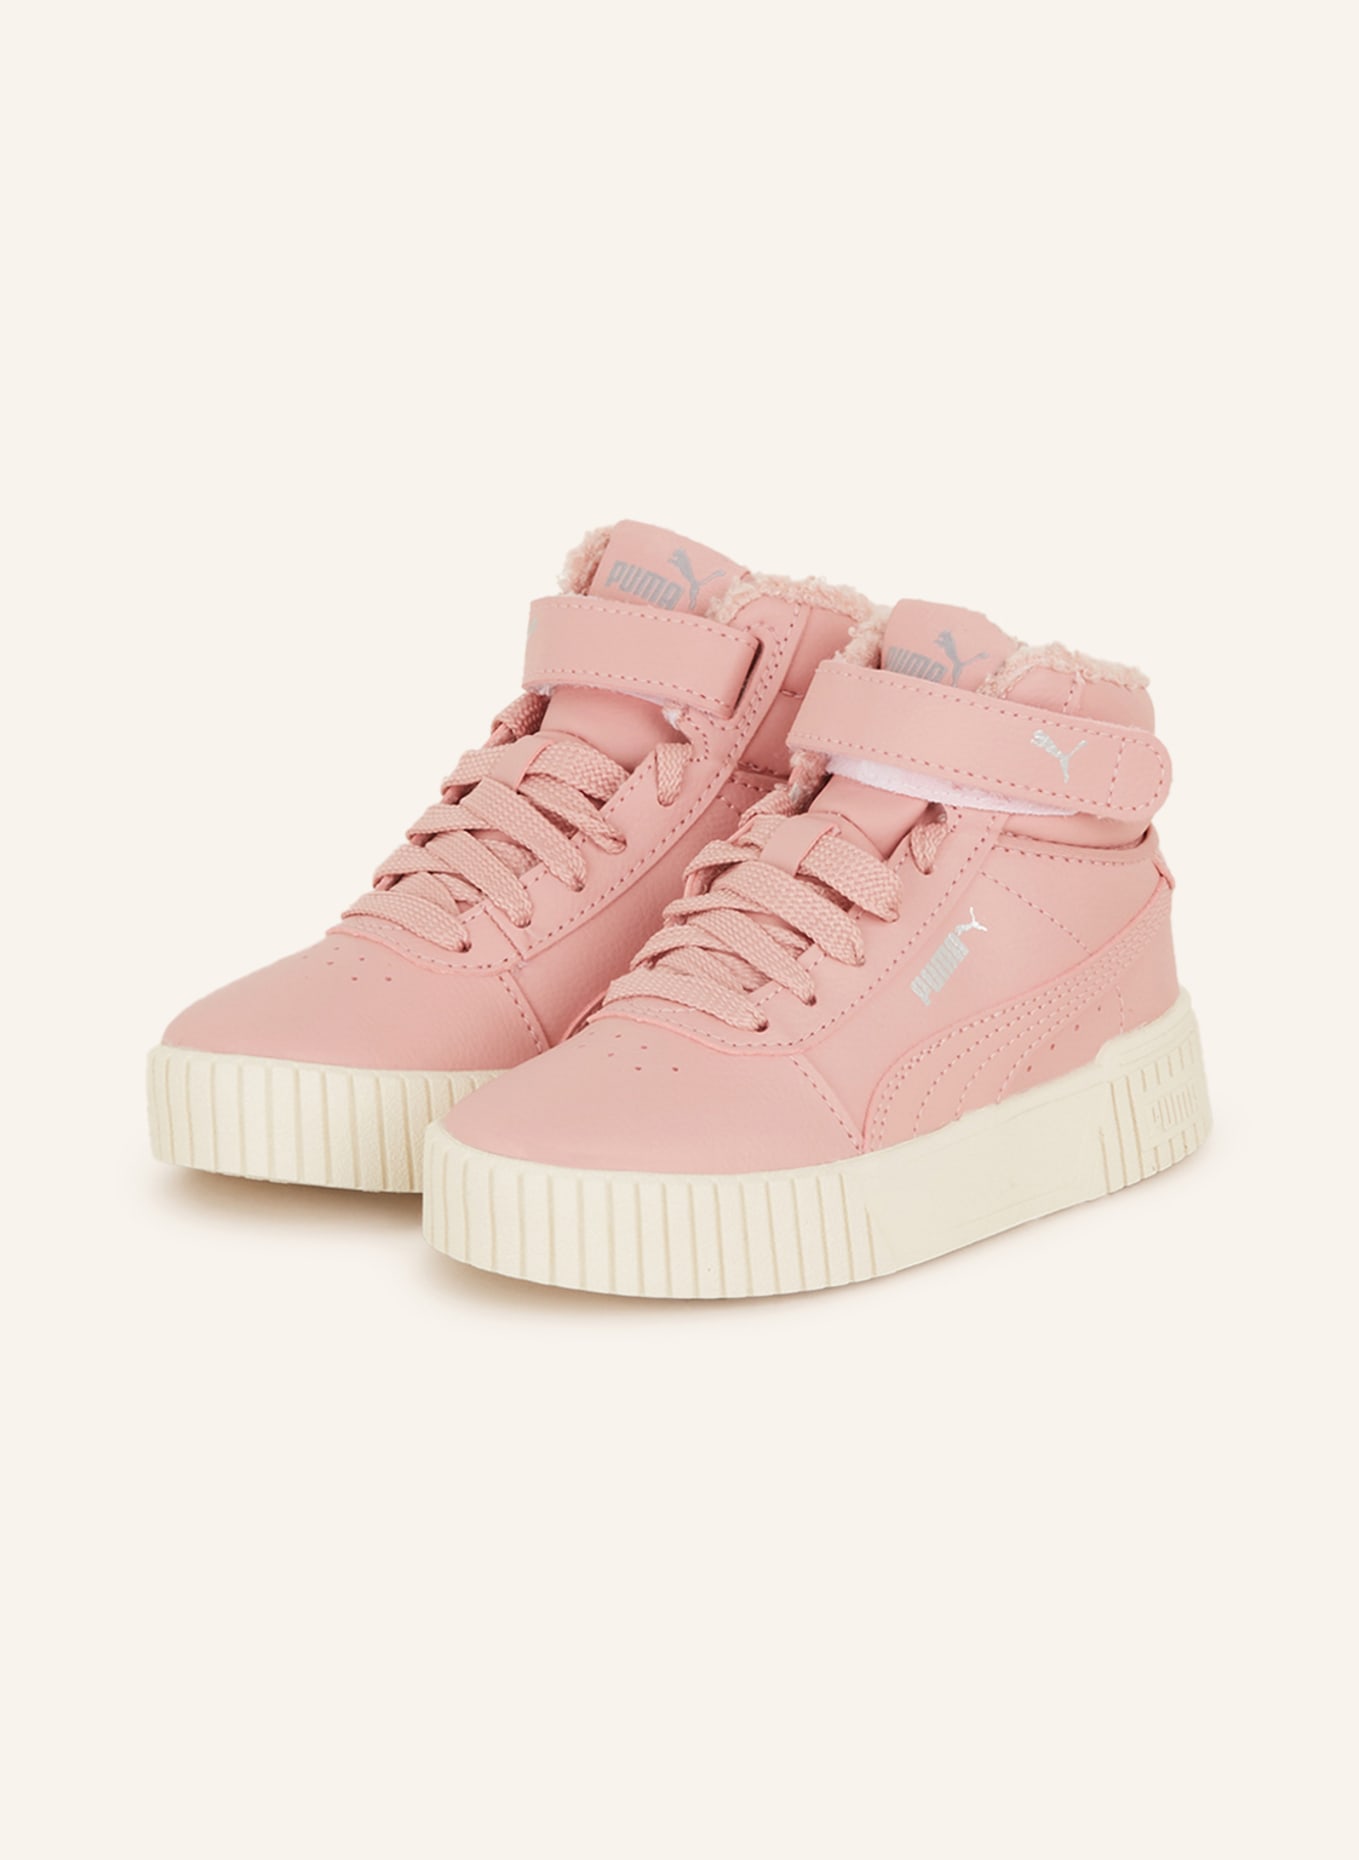 PUMA Hightop-Sneaker CARINA 2.0 pink in